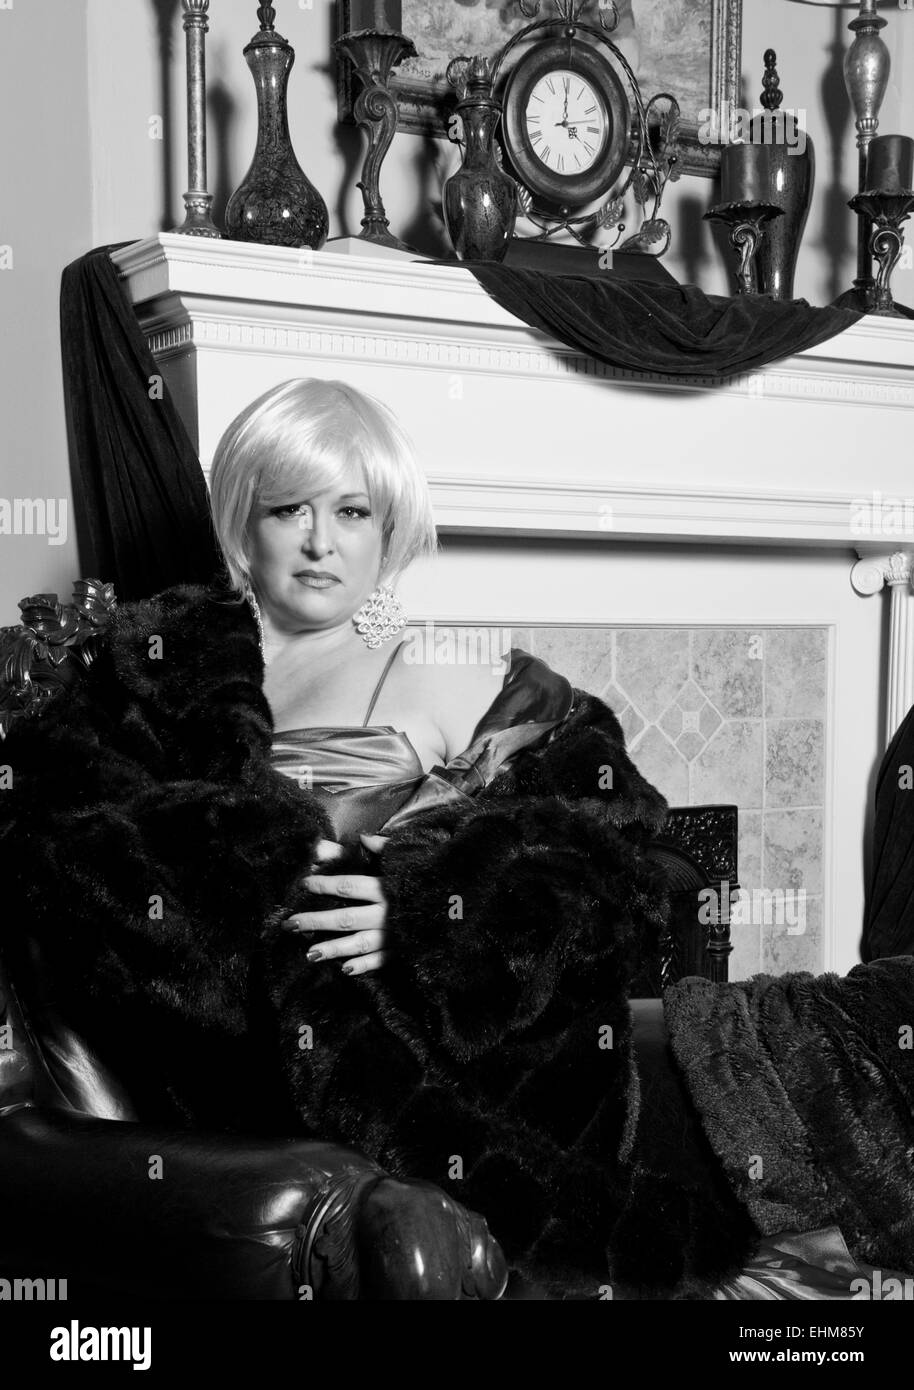 Ein dramatisches Porträt einer Frau gekleidet in Abendgarderobe und einen Pelzmantel - schwarz / weiß Foto Stockfoto